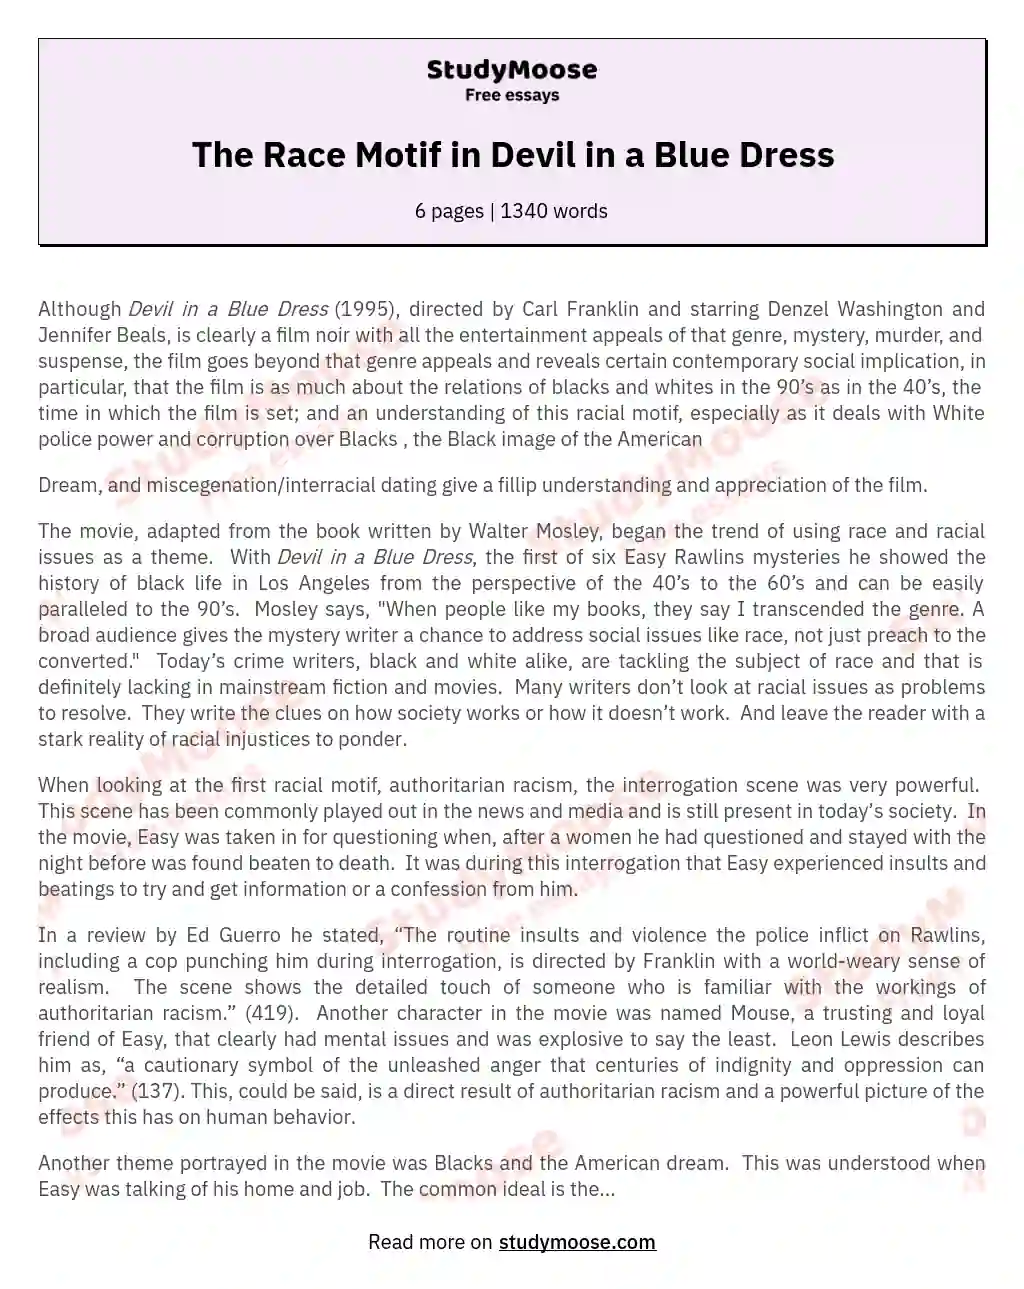 The Race Motif in Devil in a Blue Dress essay